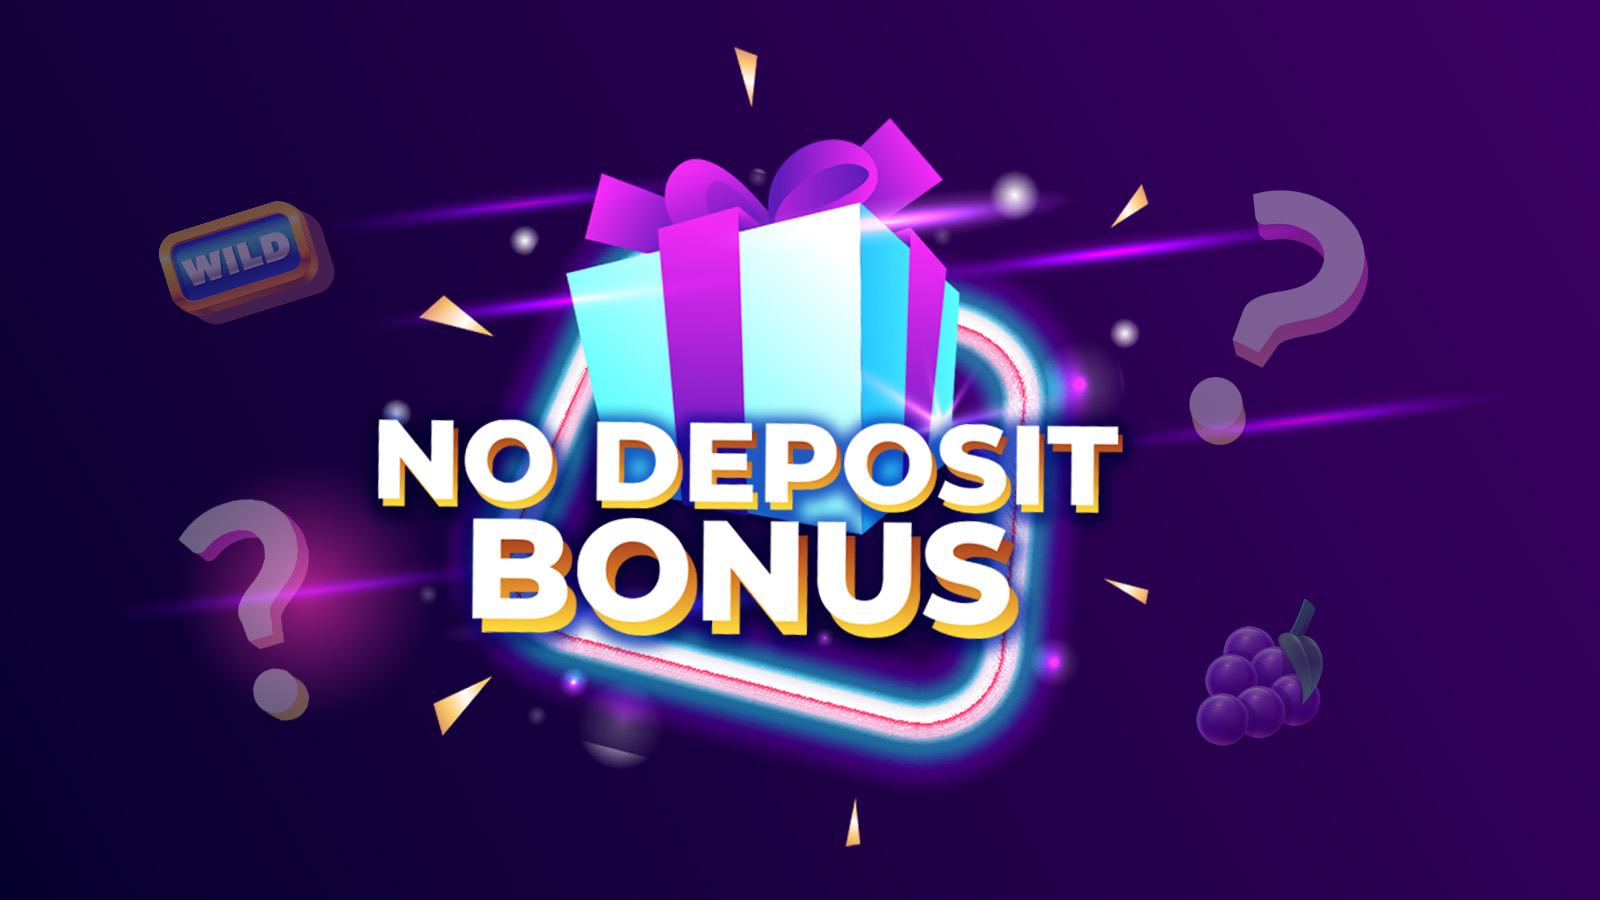 What are no deposit casino bonus offers